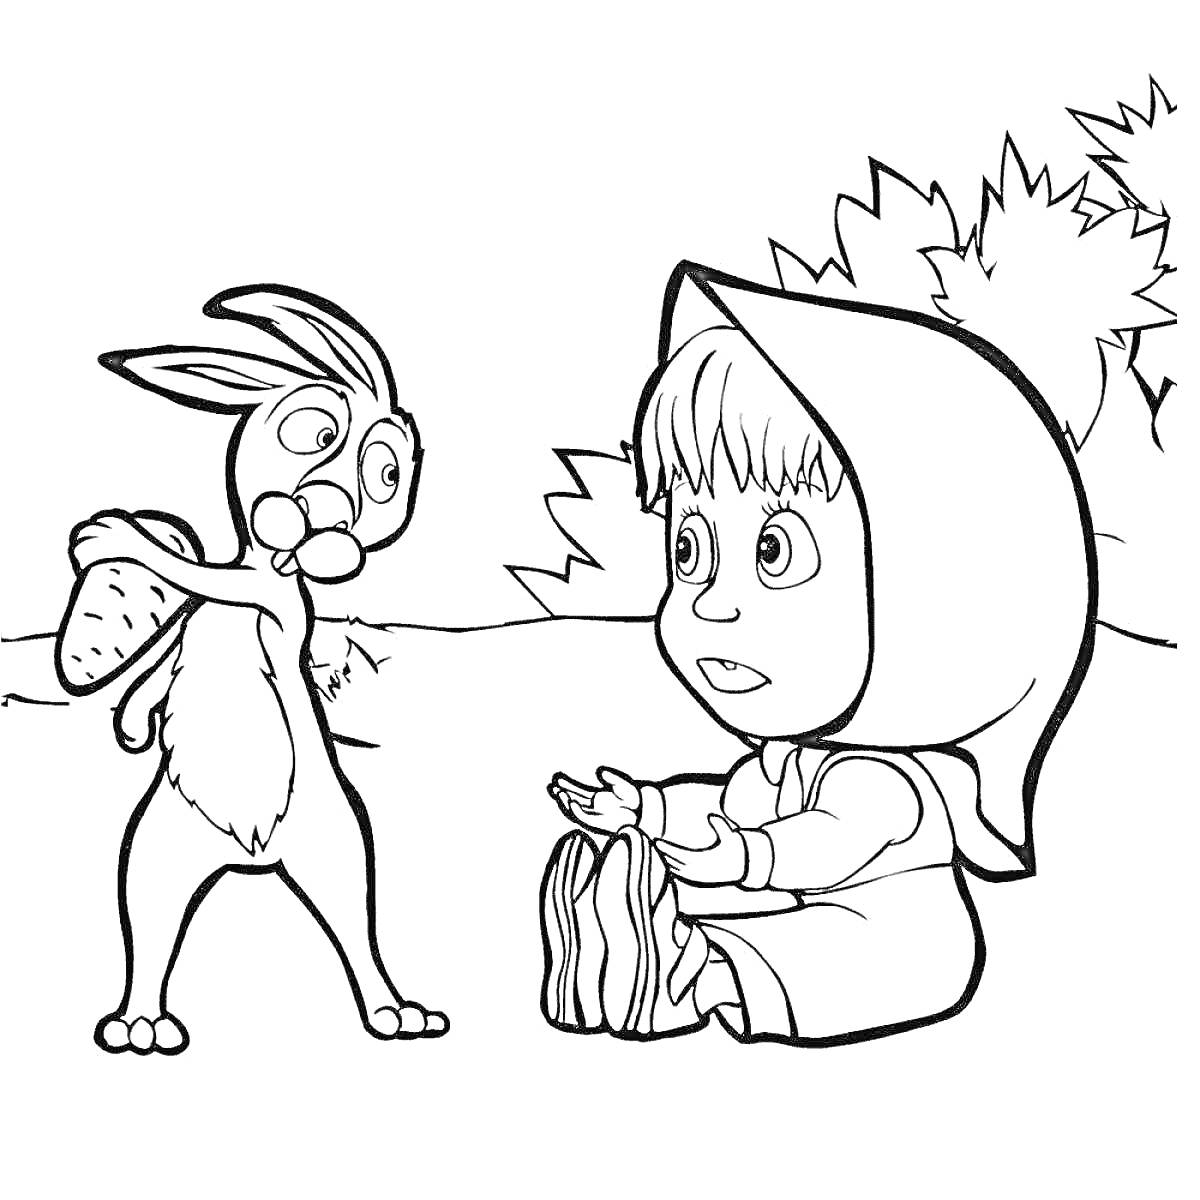 Раскраска Маша и Медведь: Маша разговаривает с Зайцем, держащим морковь, на фоне деревьев